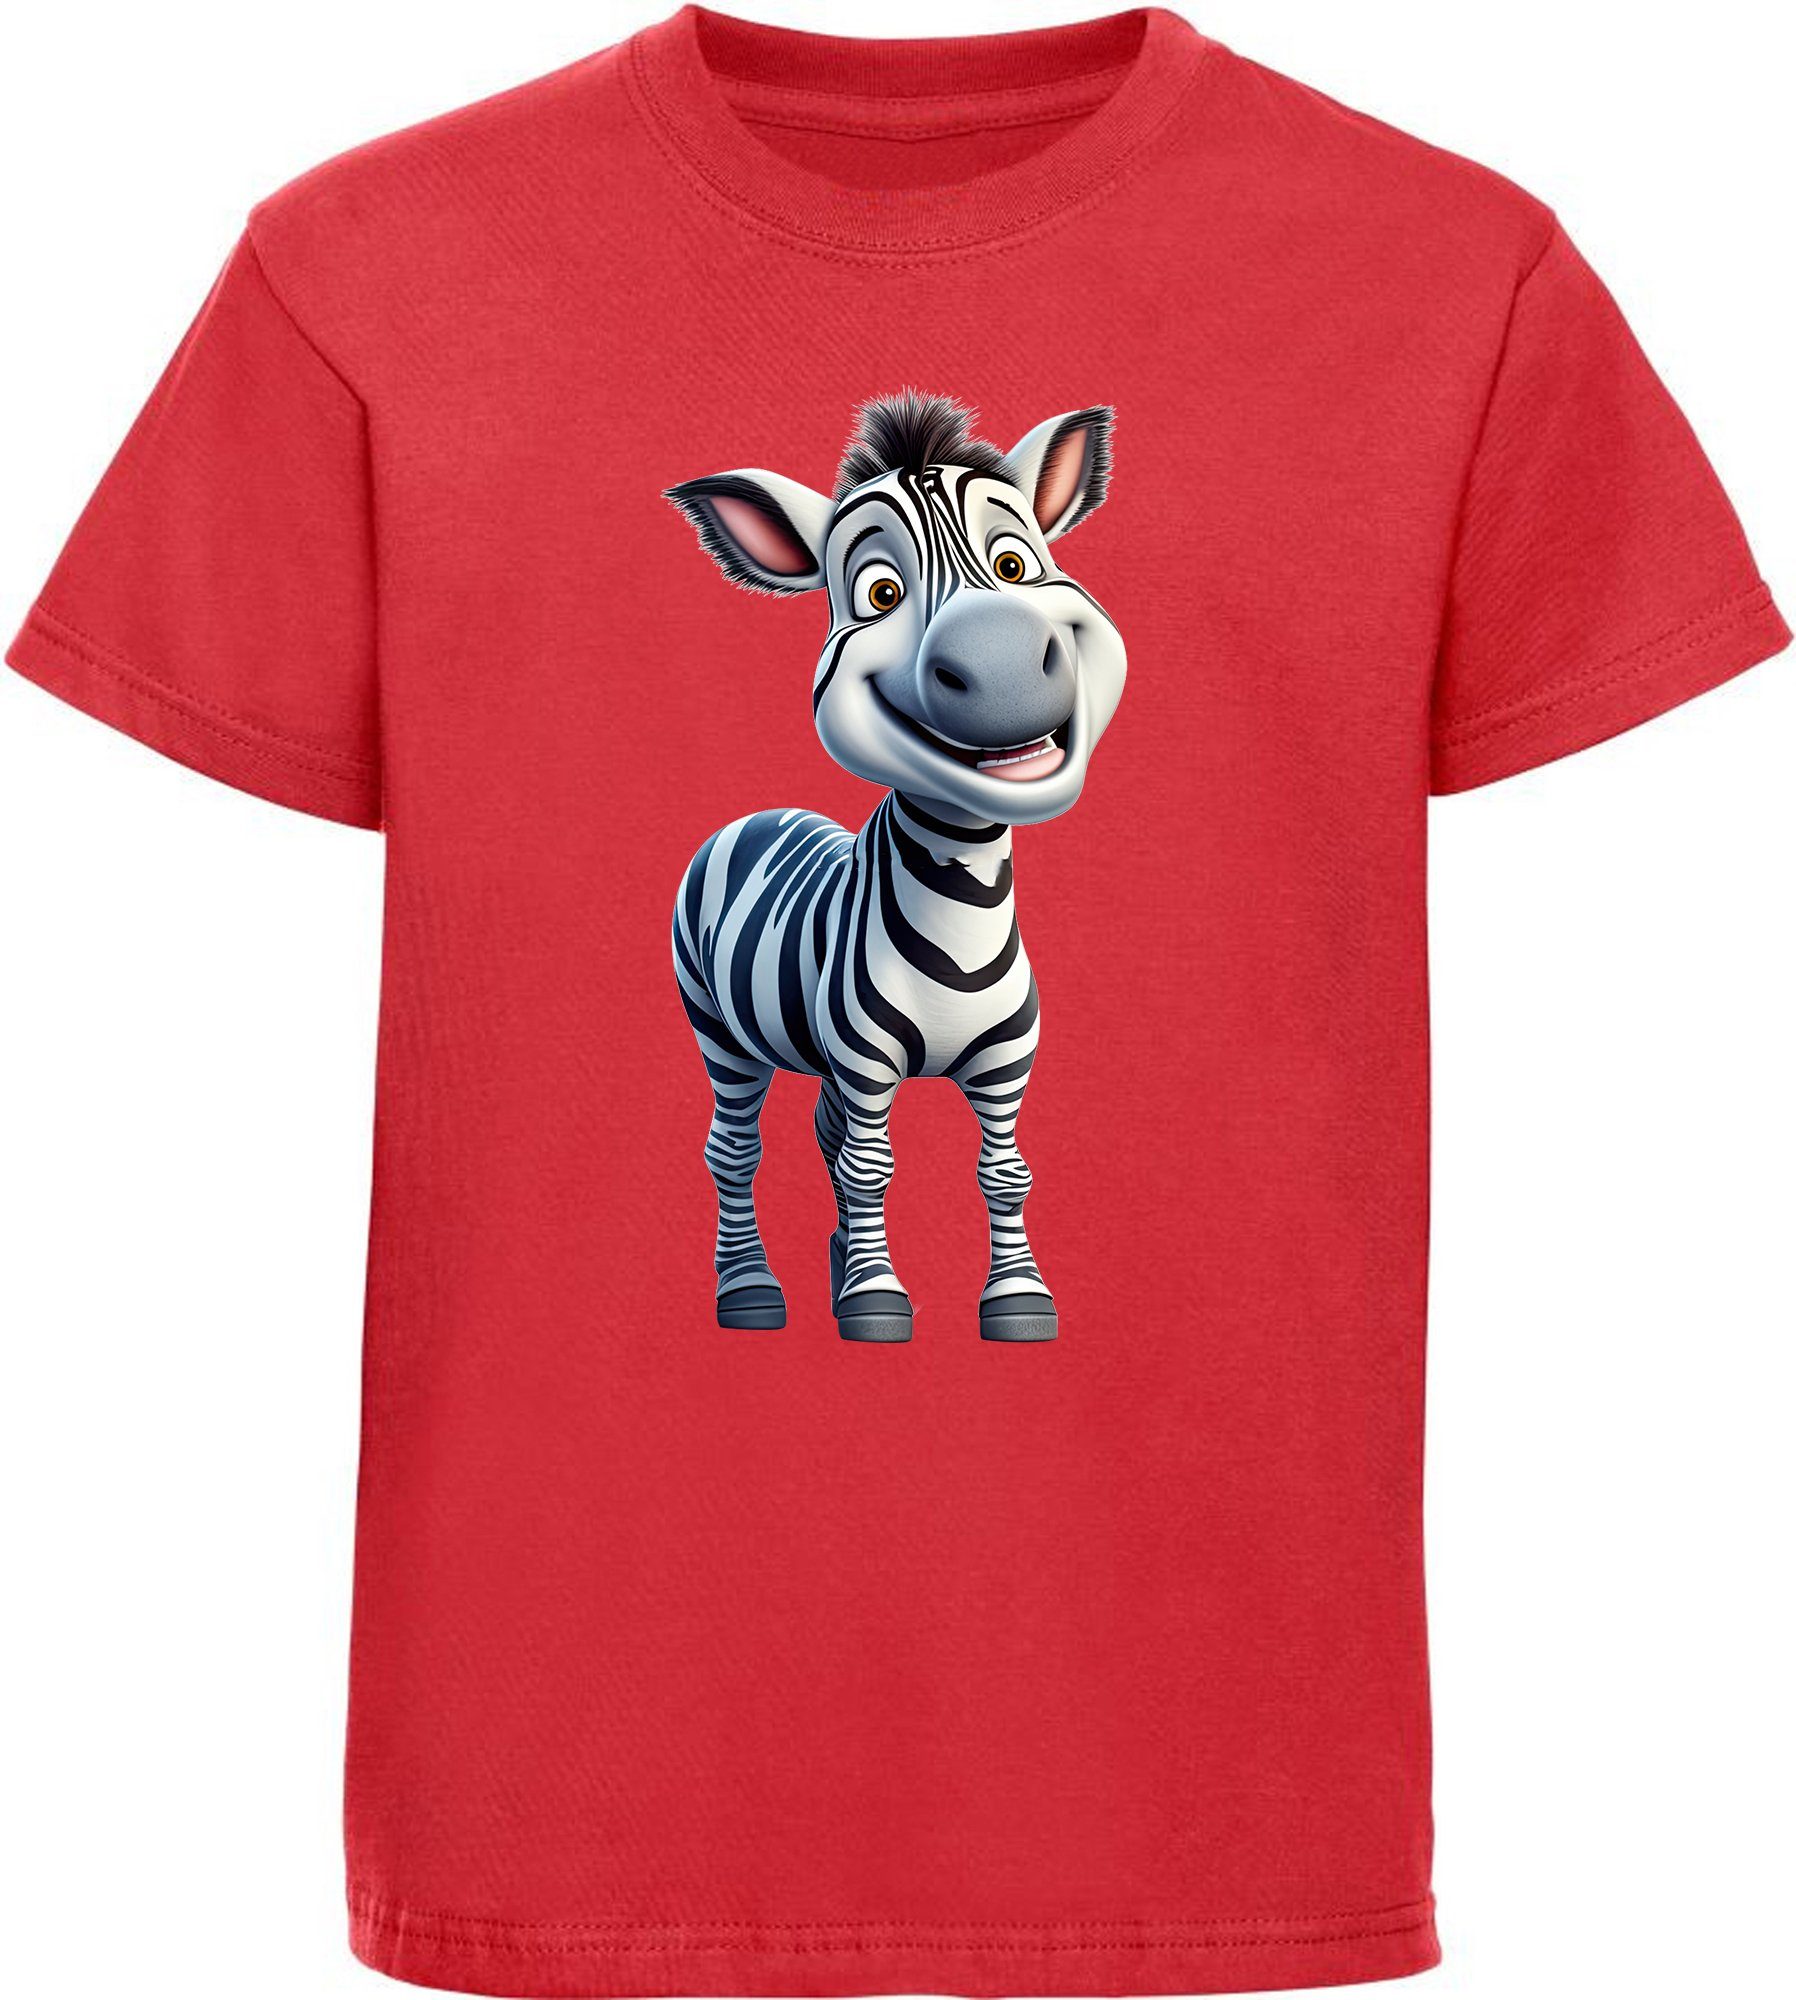 MyDesign24 T-Shirt Shirt Print Baumwollshirt i280 mit Zebra rot Kinder - Aufdruck, Wildtier bedruckt Baby